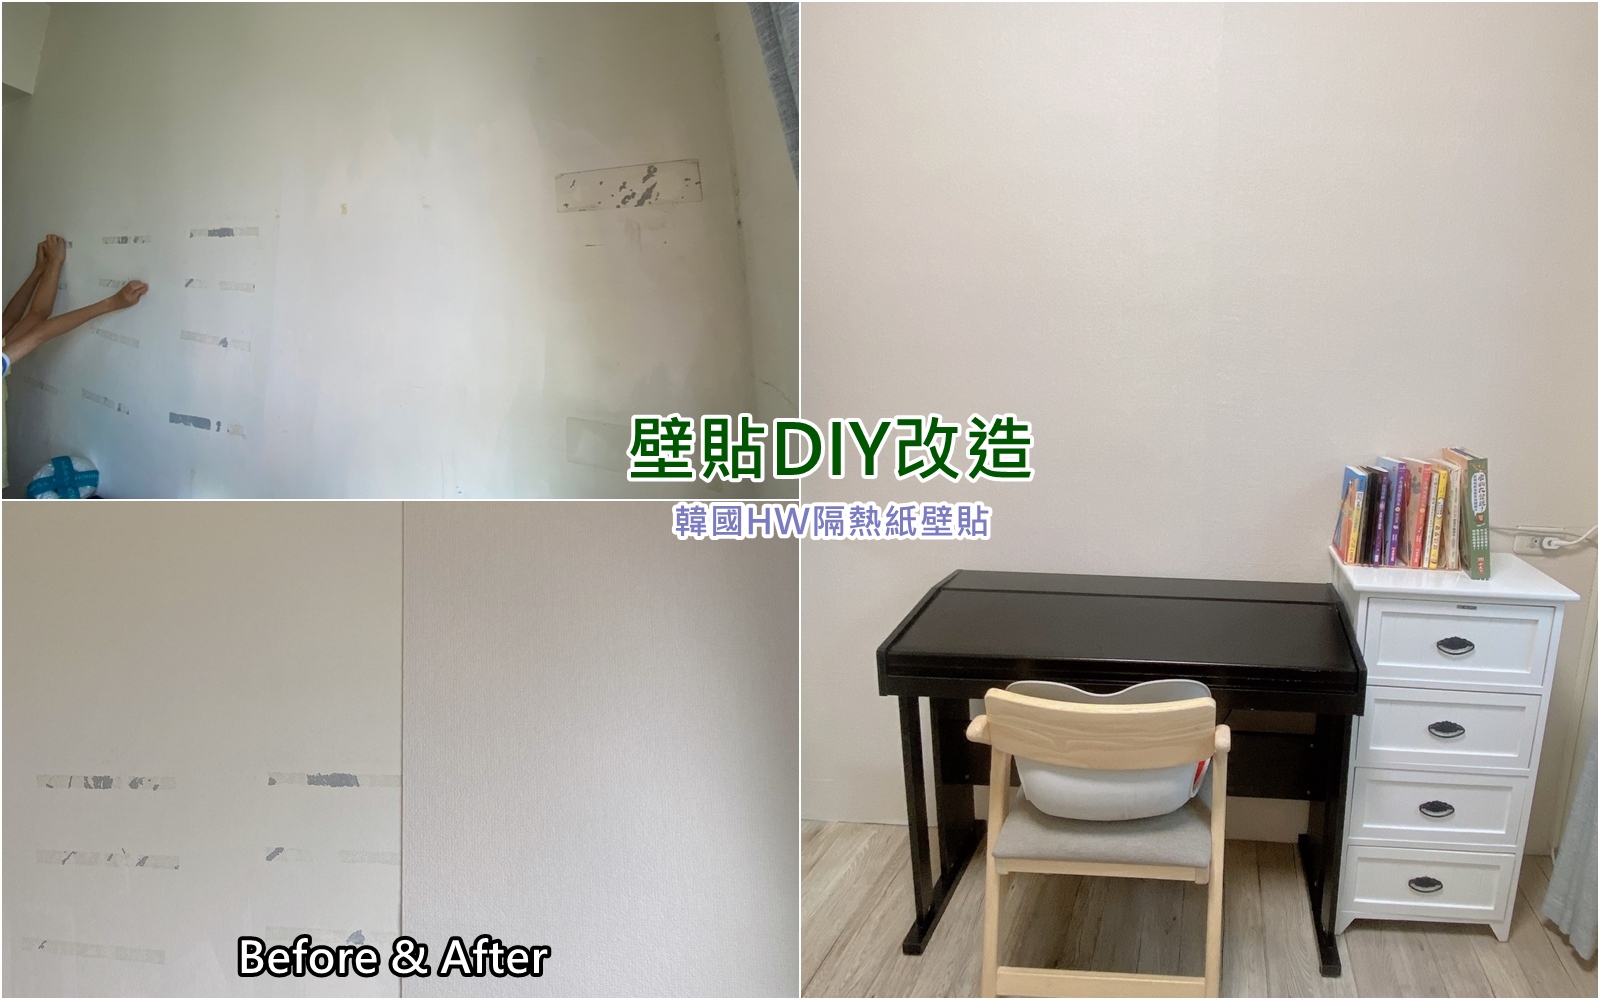 居家改造 韓國HW隔熱紙壁貼 輕鬆diy提升居家質感 把牆壁變超美!